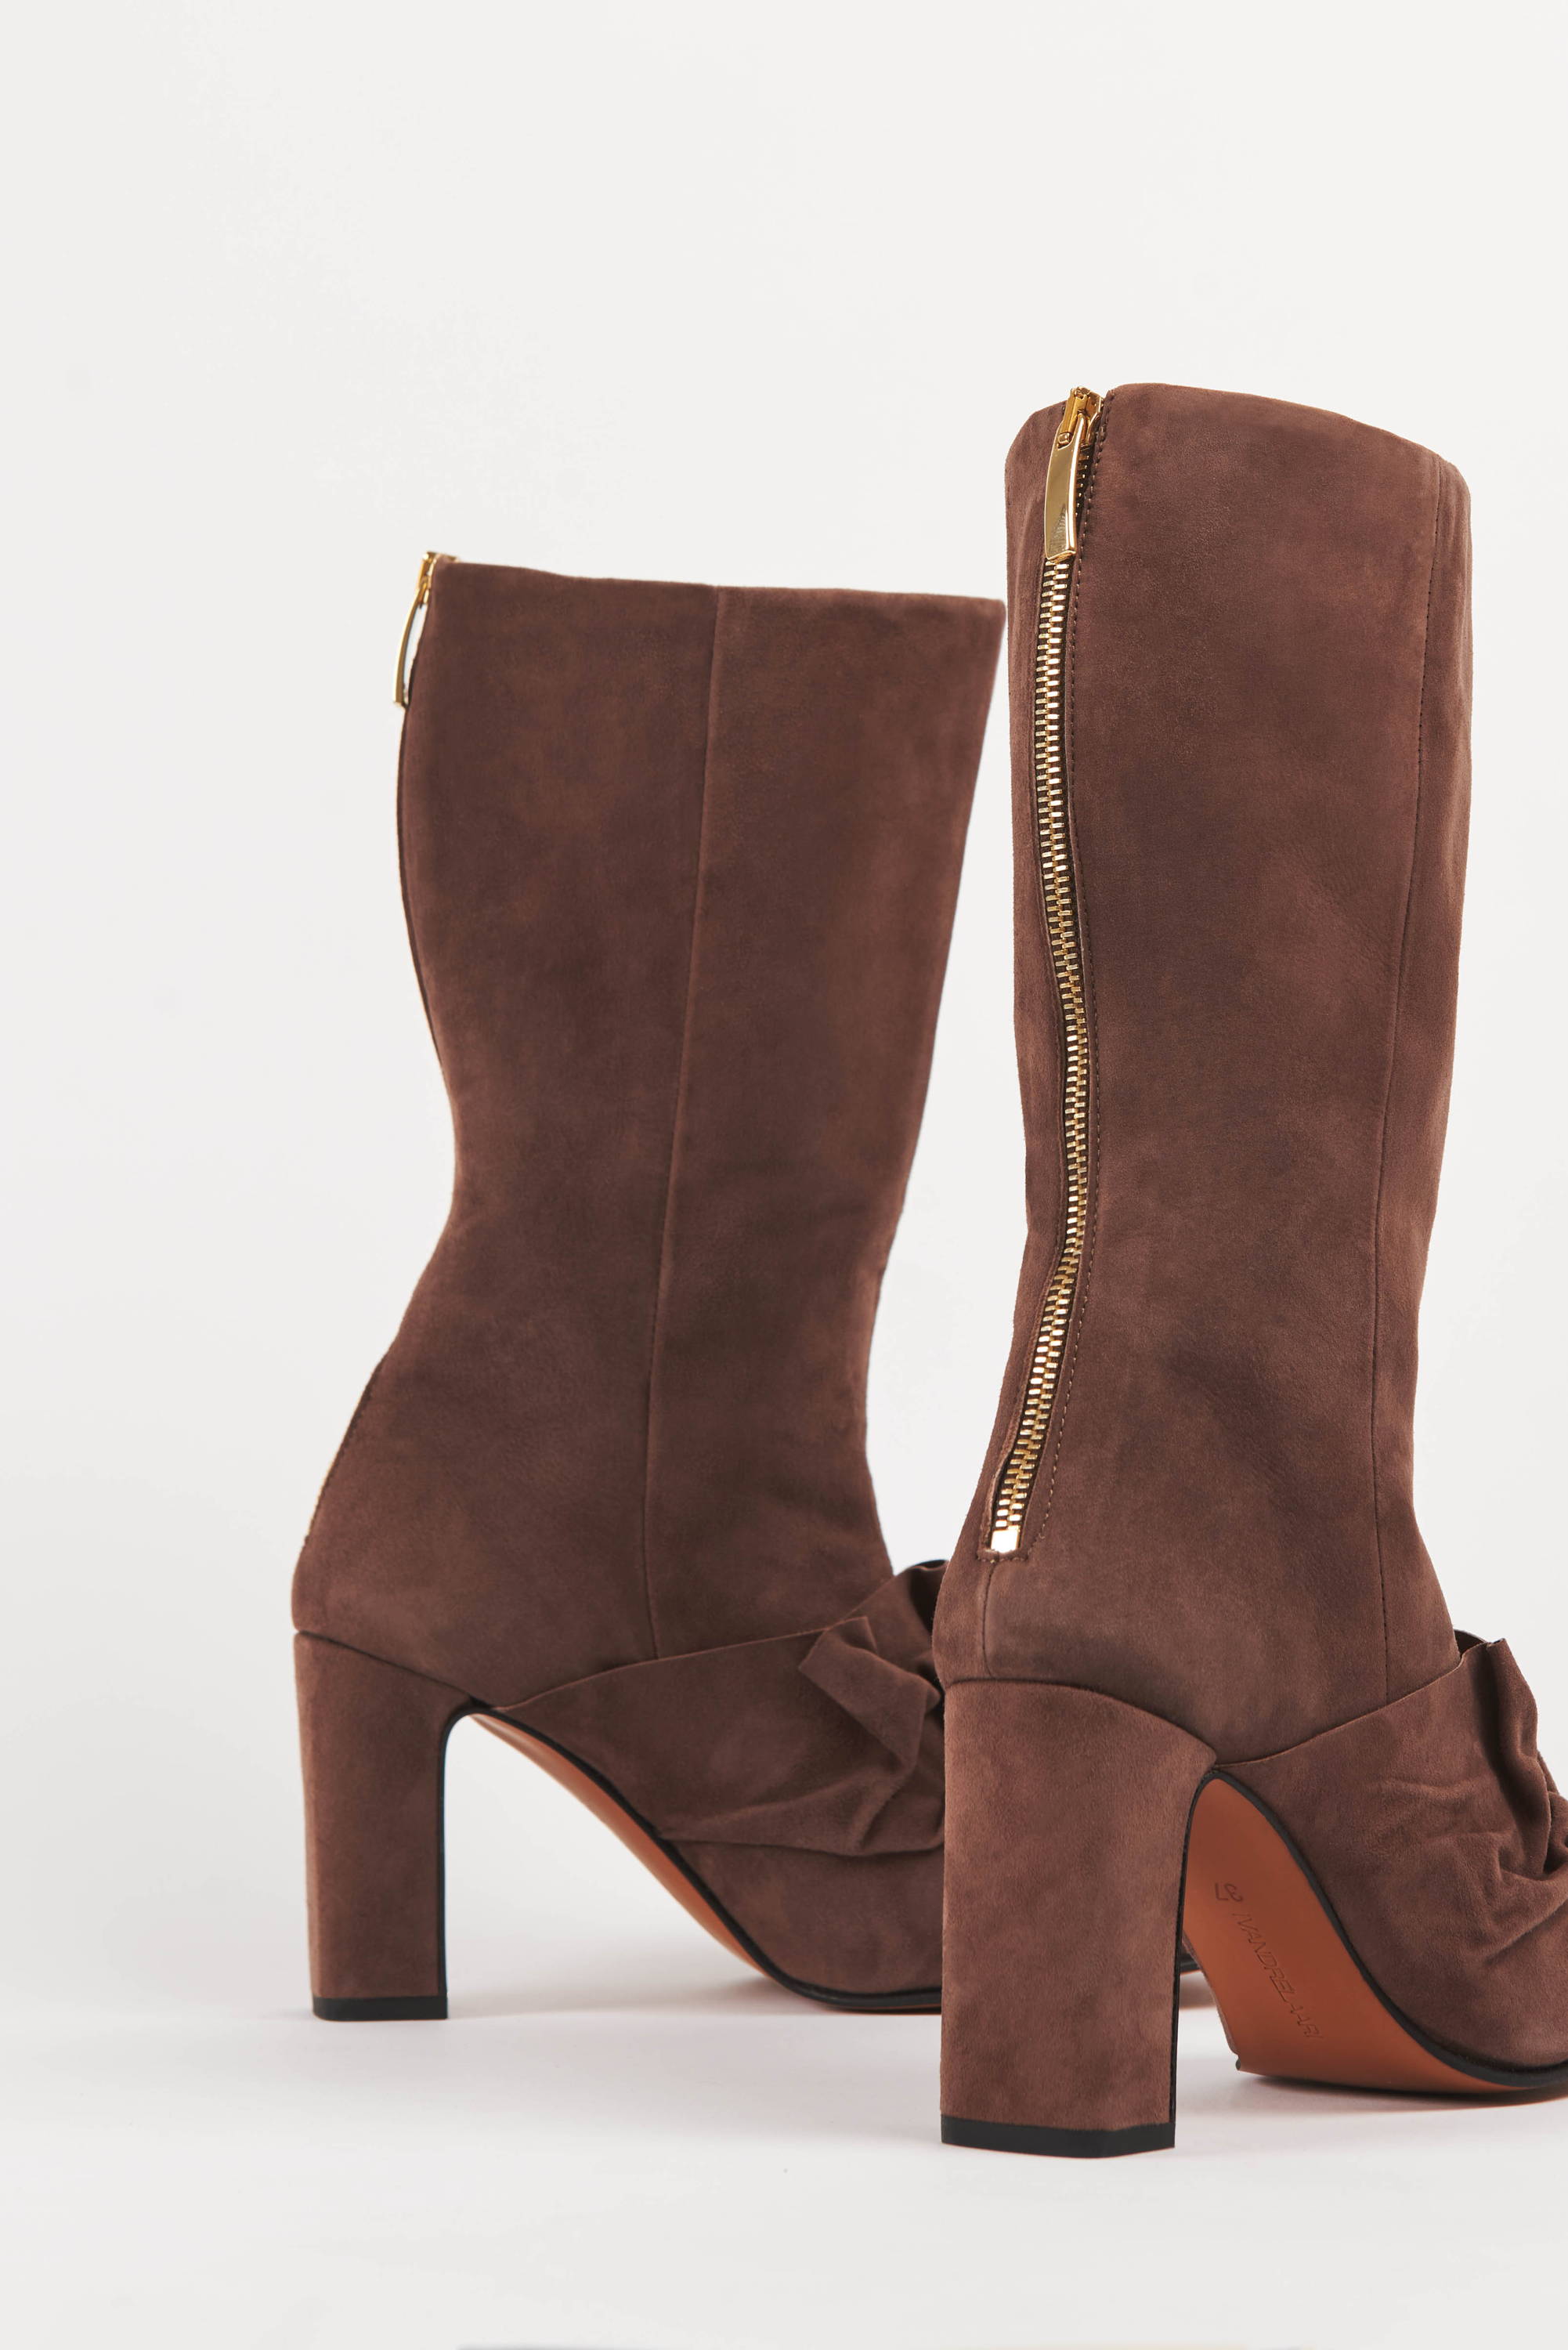 Vandrelaar Greta brown suede high-heel boot for women with gold zip detail